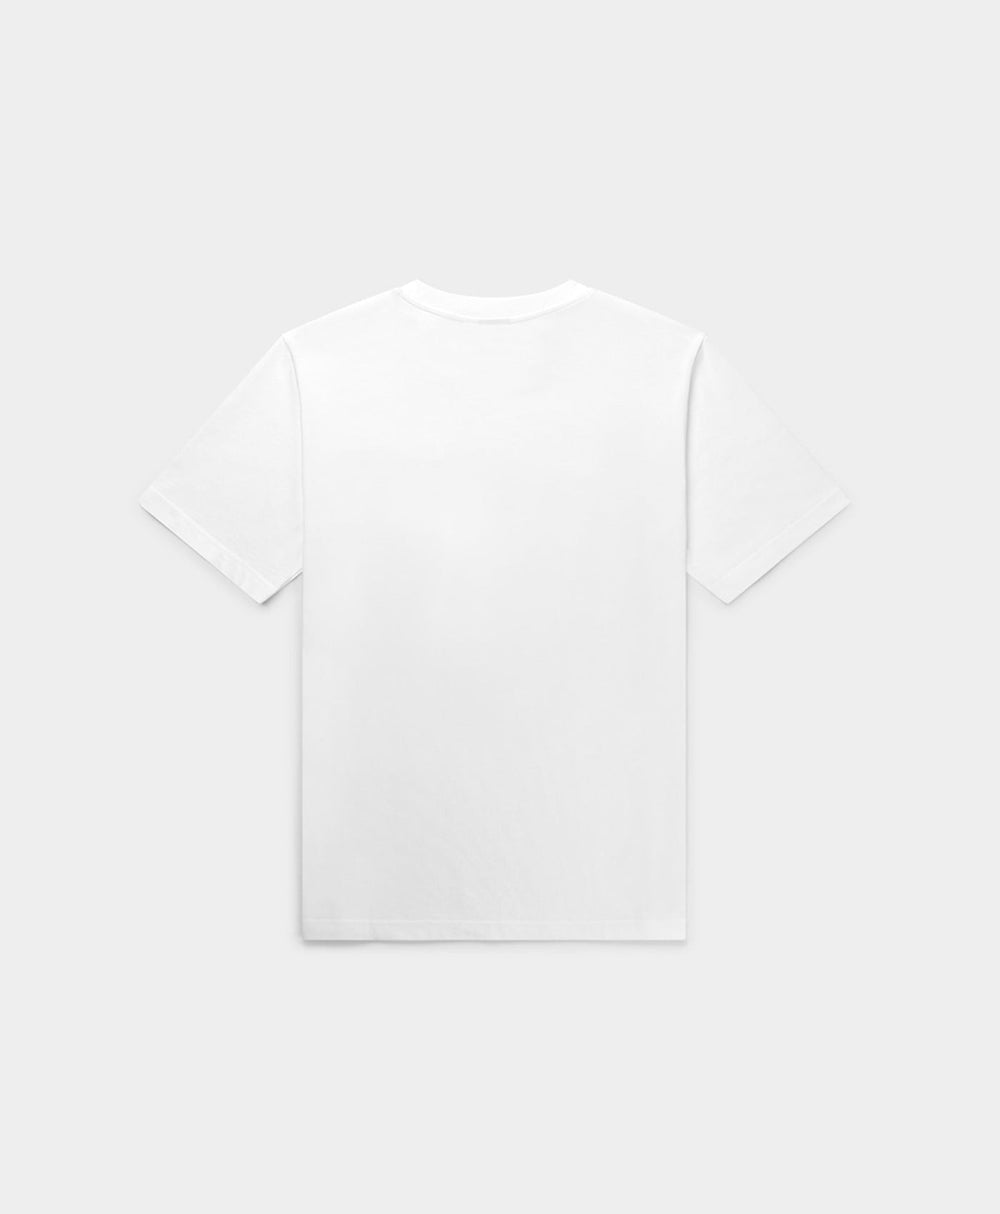 DP - White Njata T-Shirt - Packshot - Rear